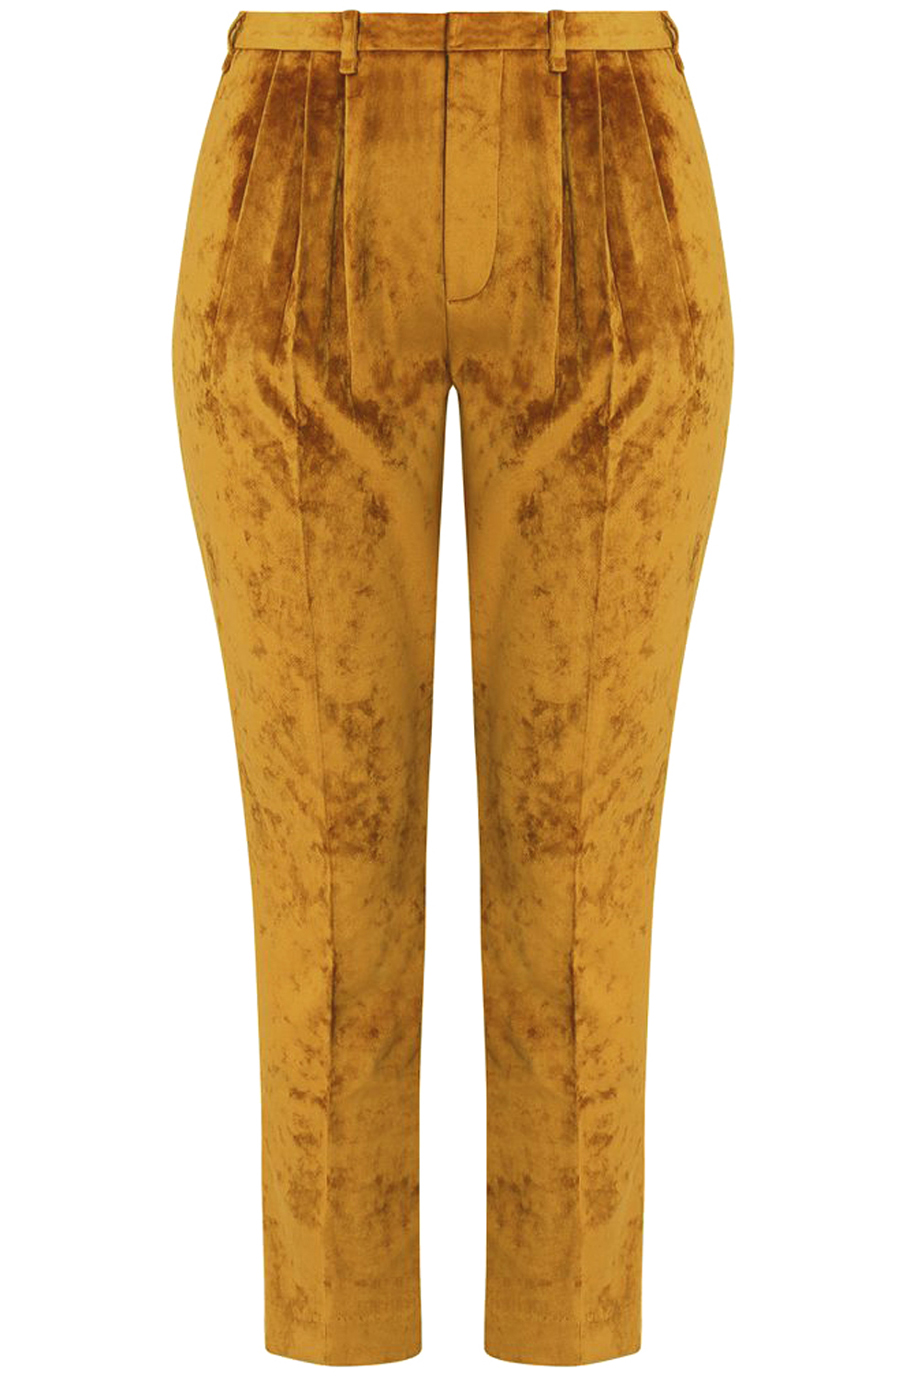 Quần nhung Anise Pants/ Gold